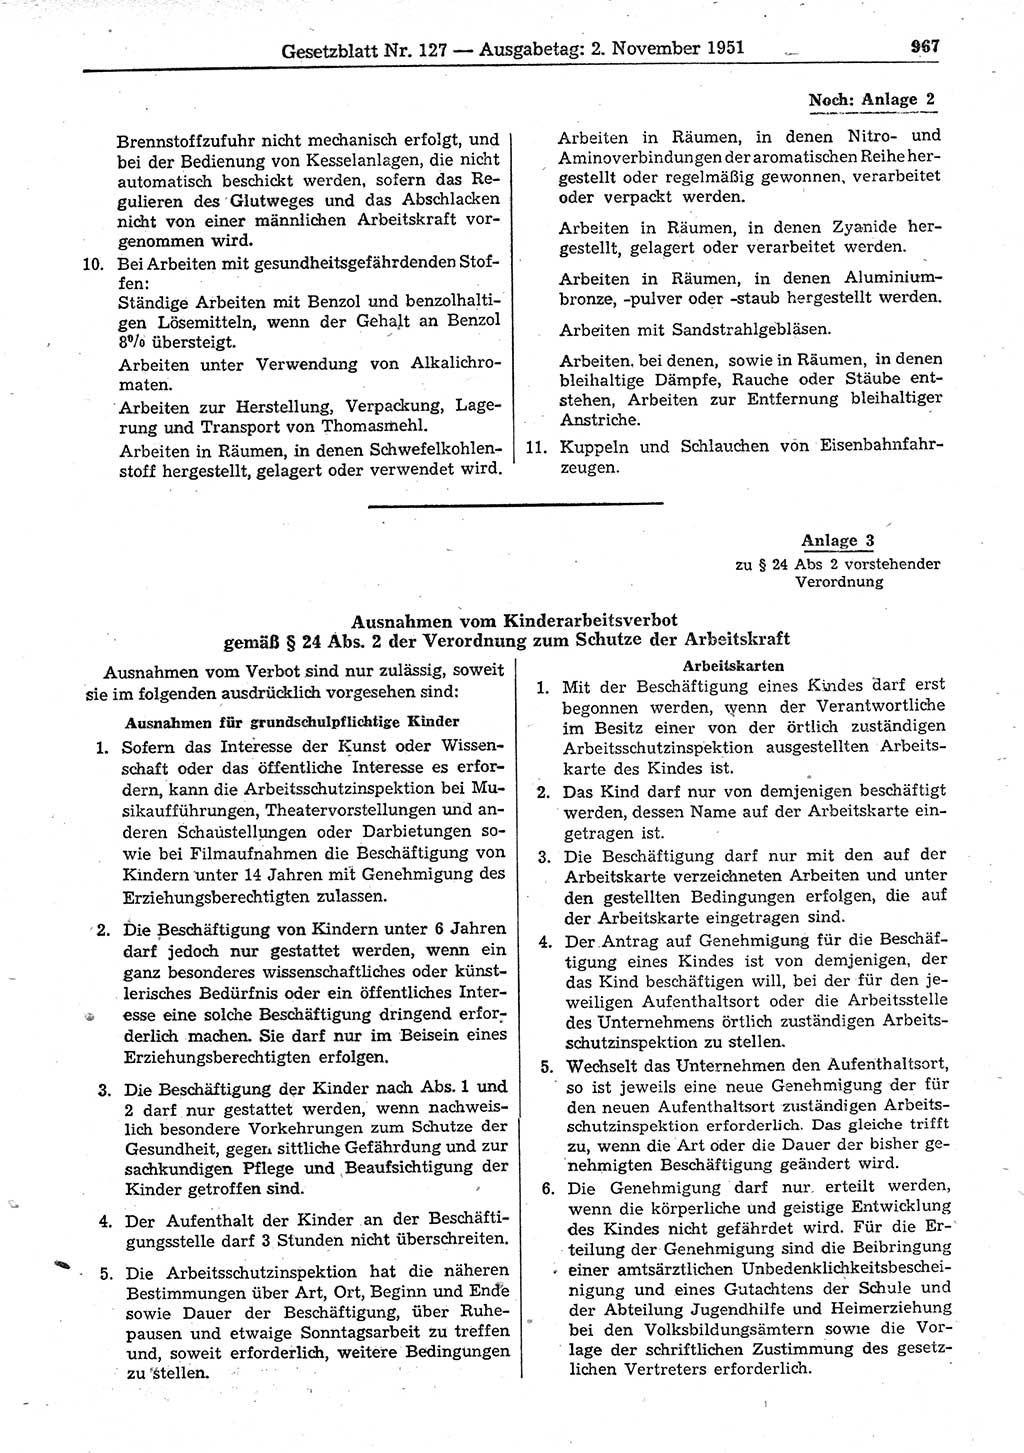 Gesetzblatt (GBl.) der Deutschen Demokratischen Republik (DDR) 1951, Seite 967 (GBl. DDR 1951, S. 967)